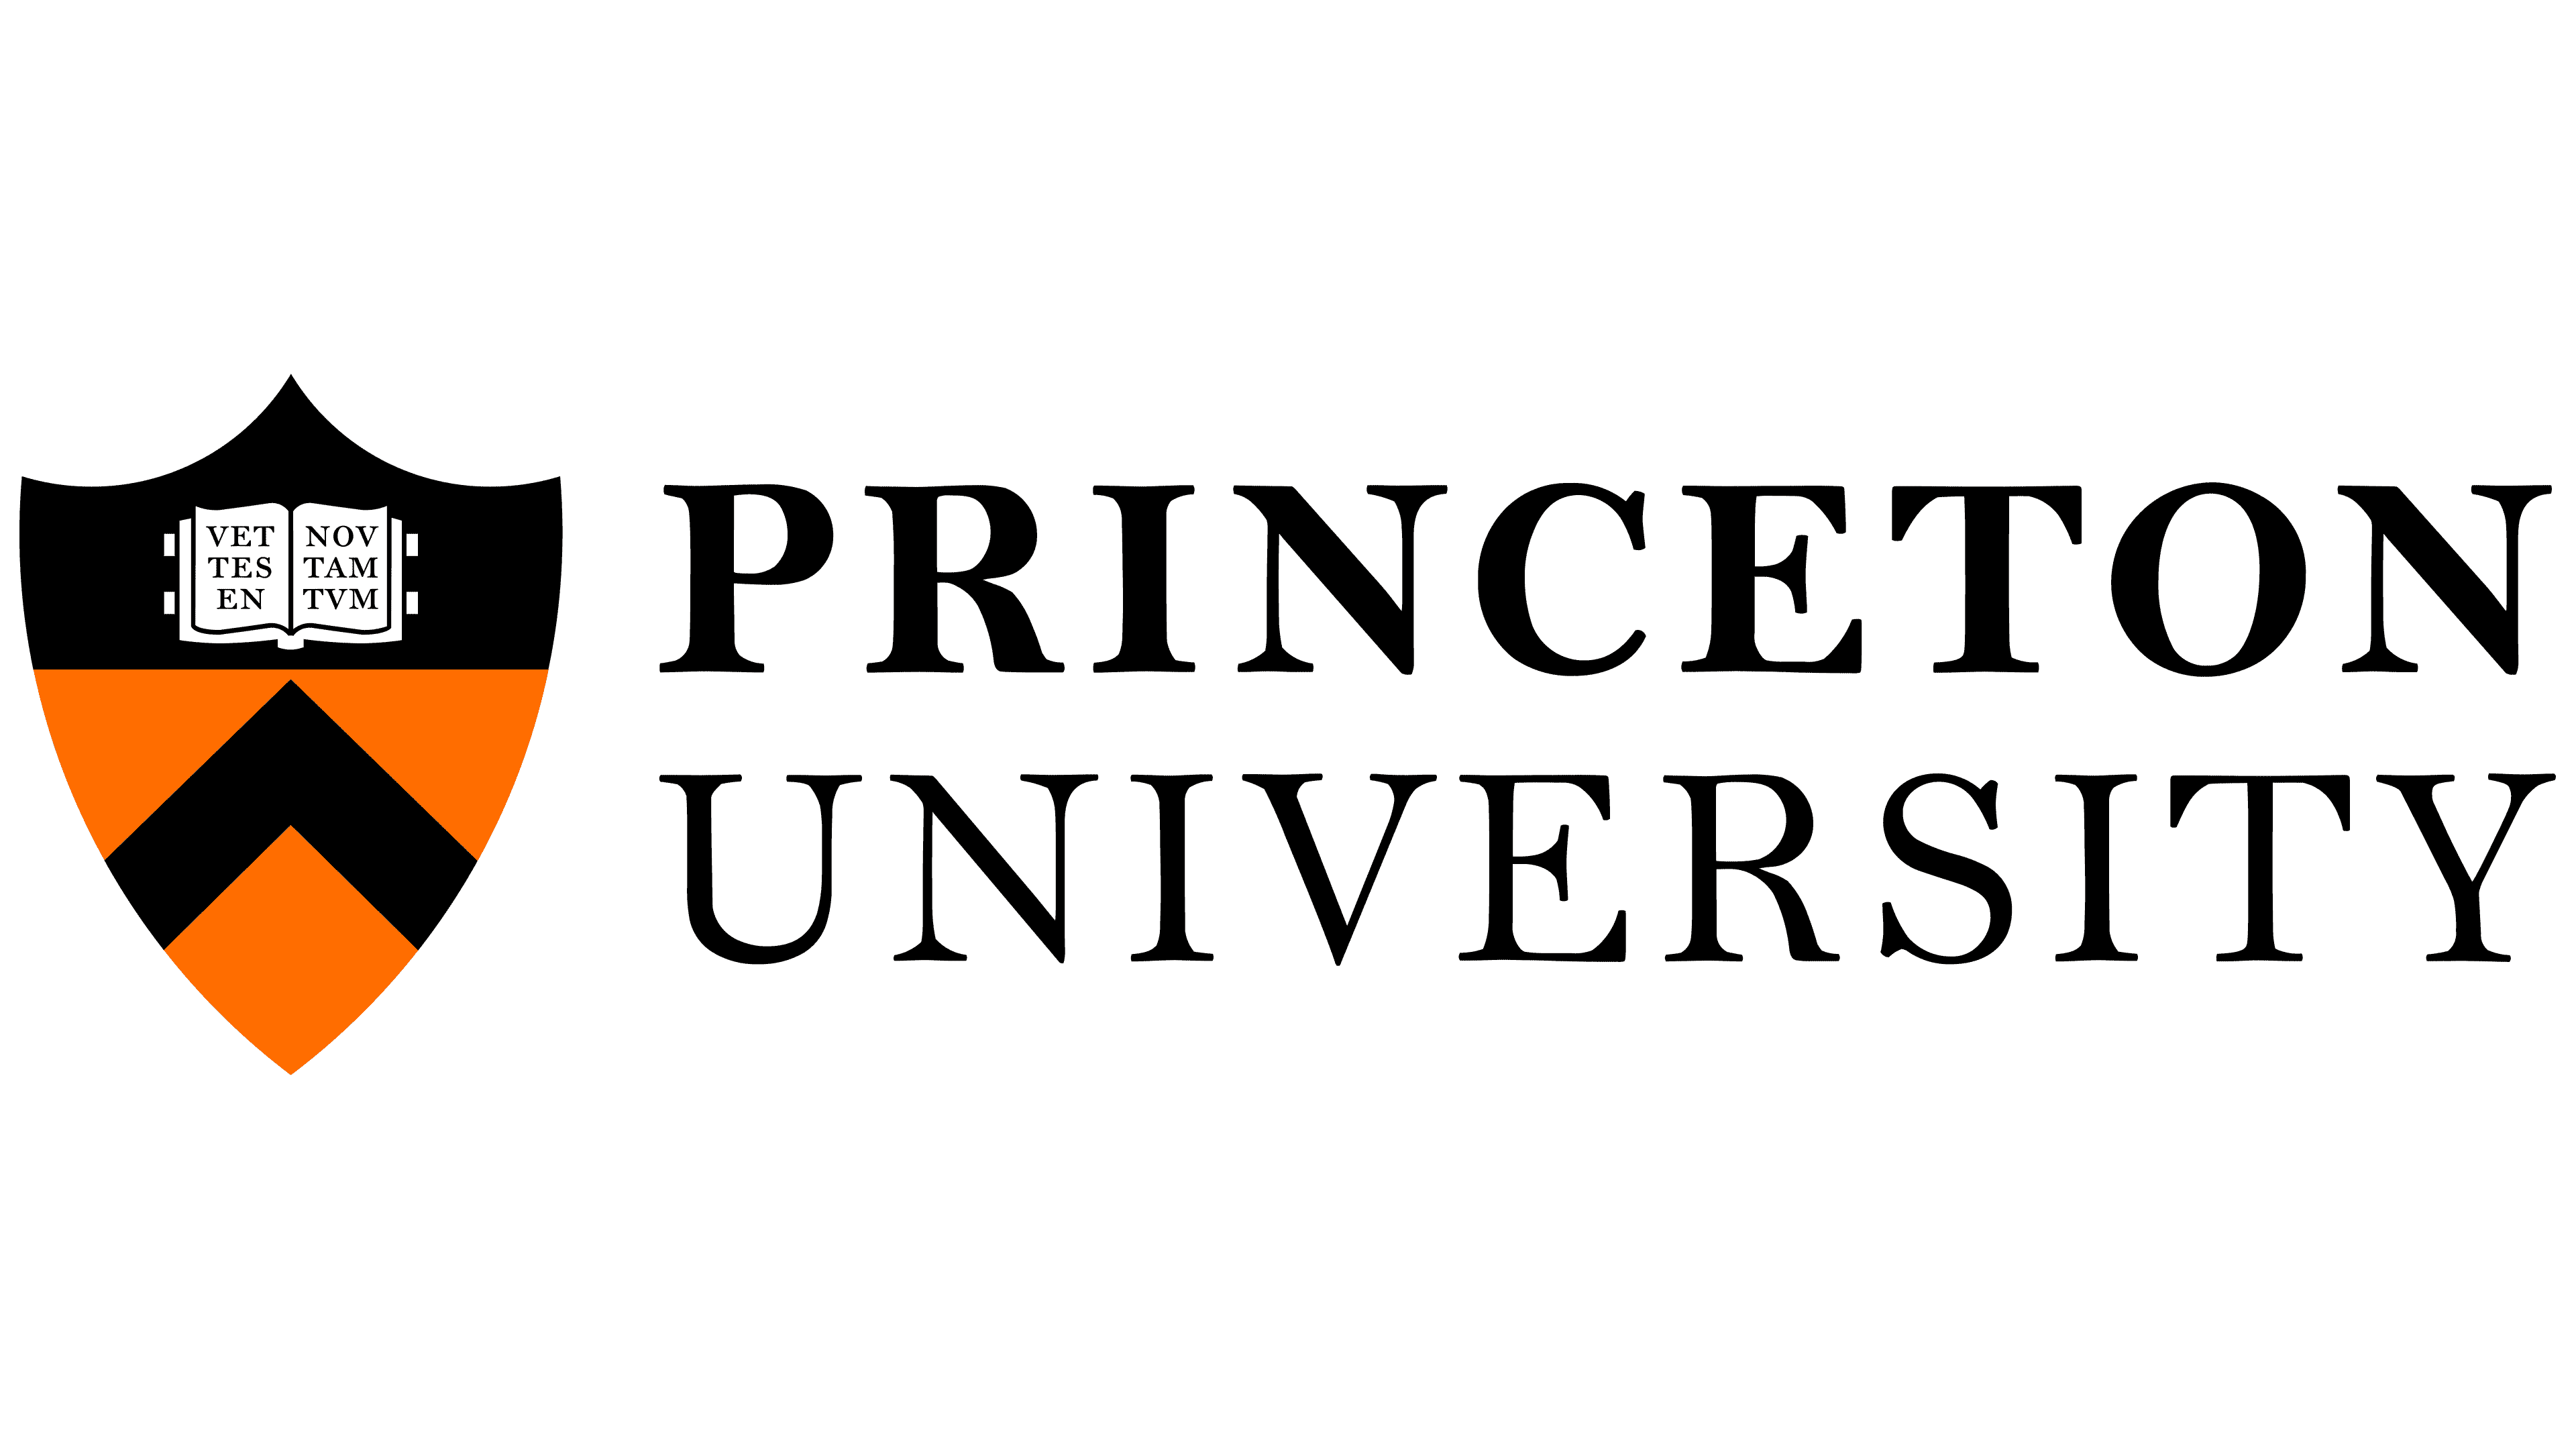 Die 10 besten Logos amerikanischer Universitäten und Hochschulen